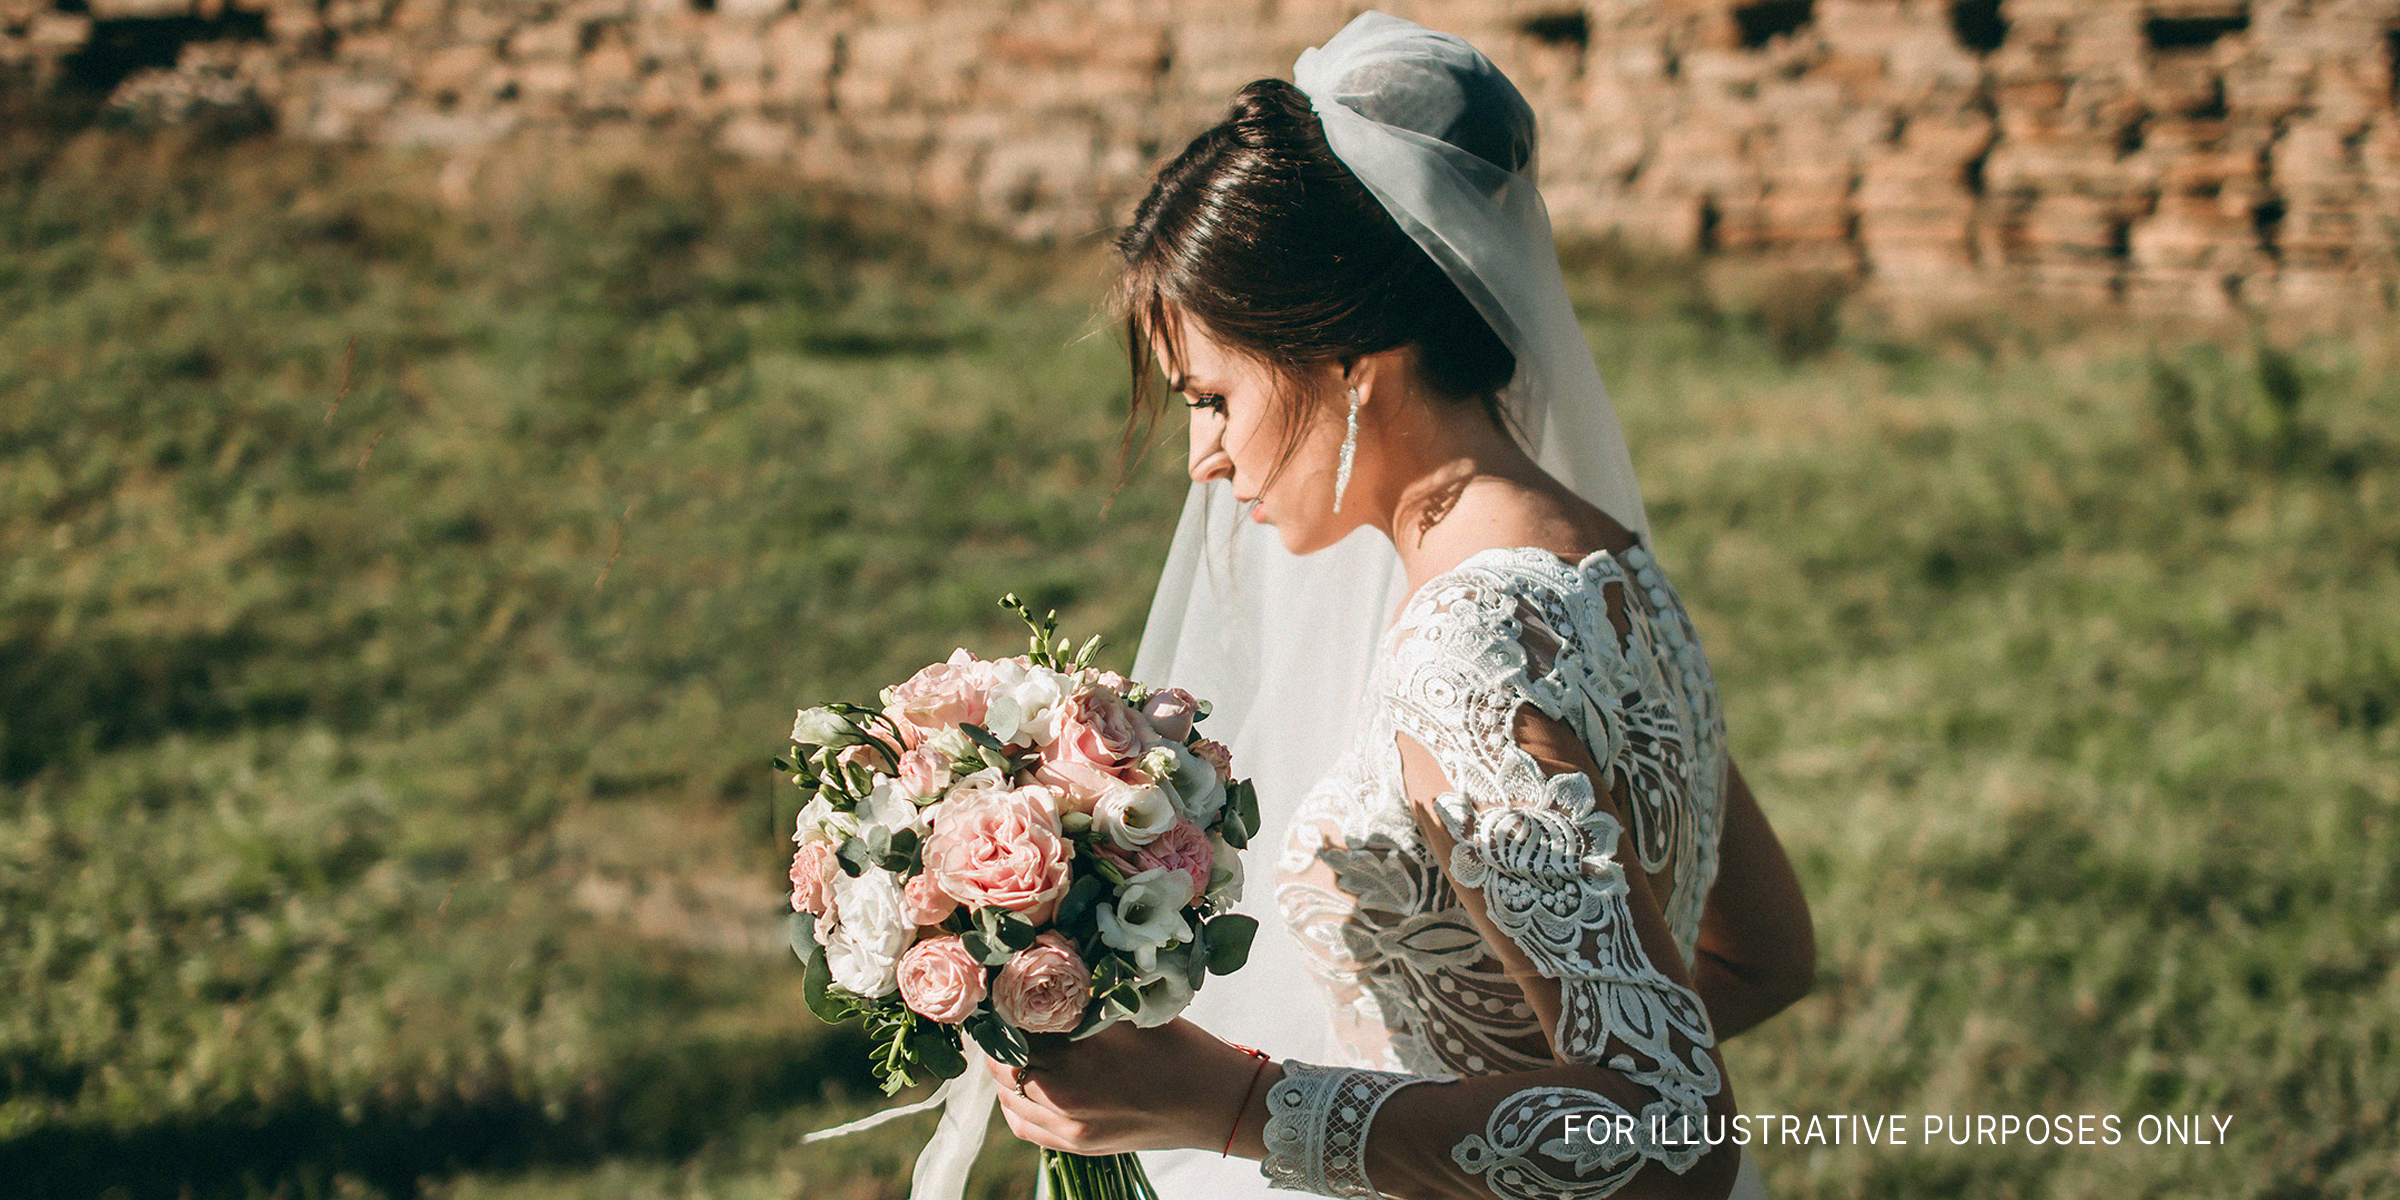 A bride holding a bouquet | Source: Shuttertstock